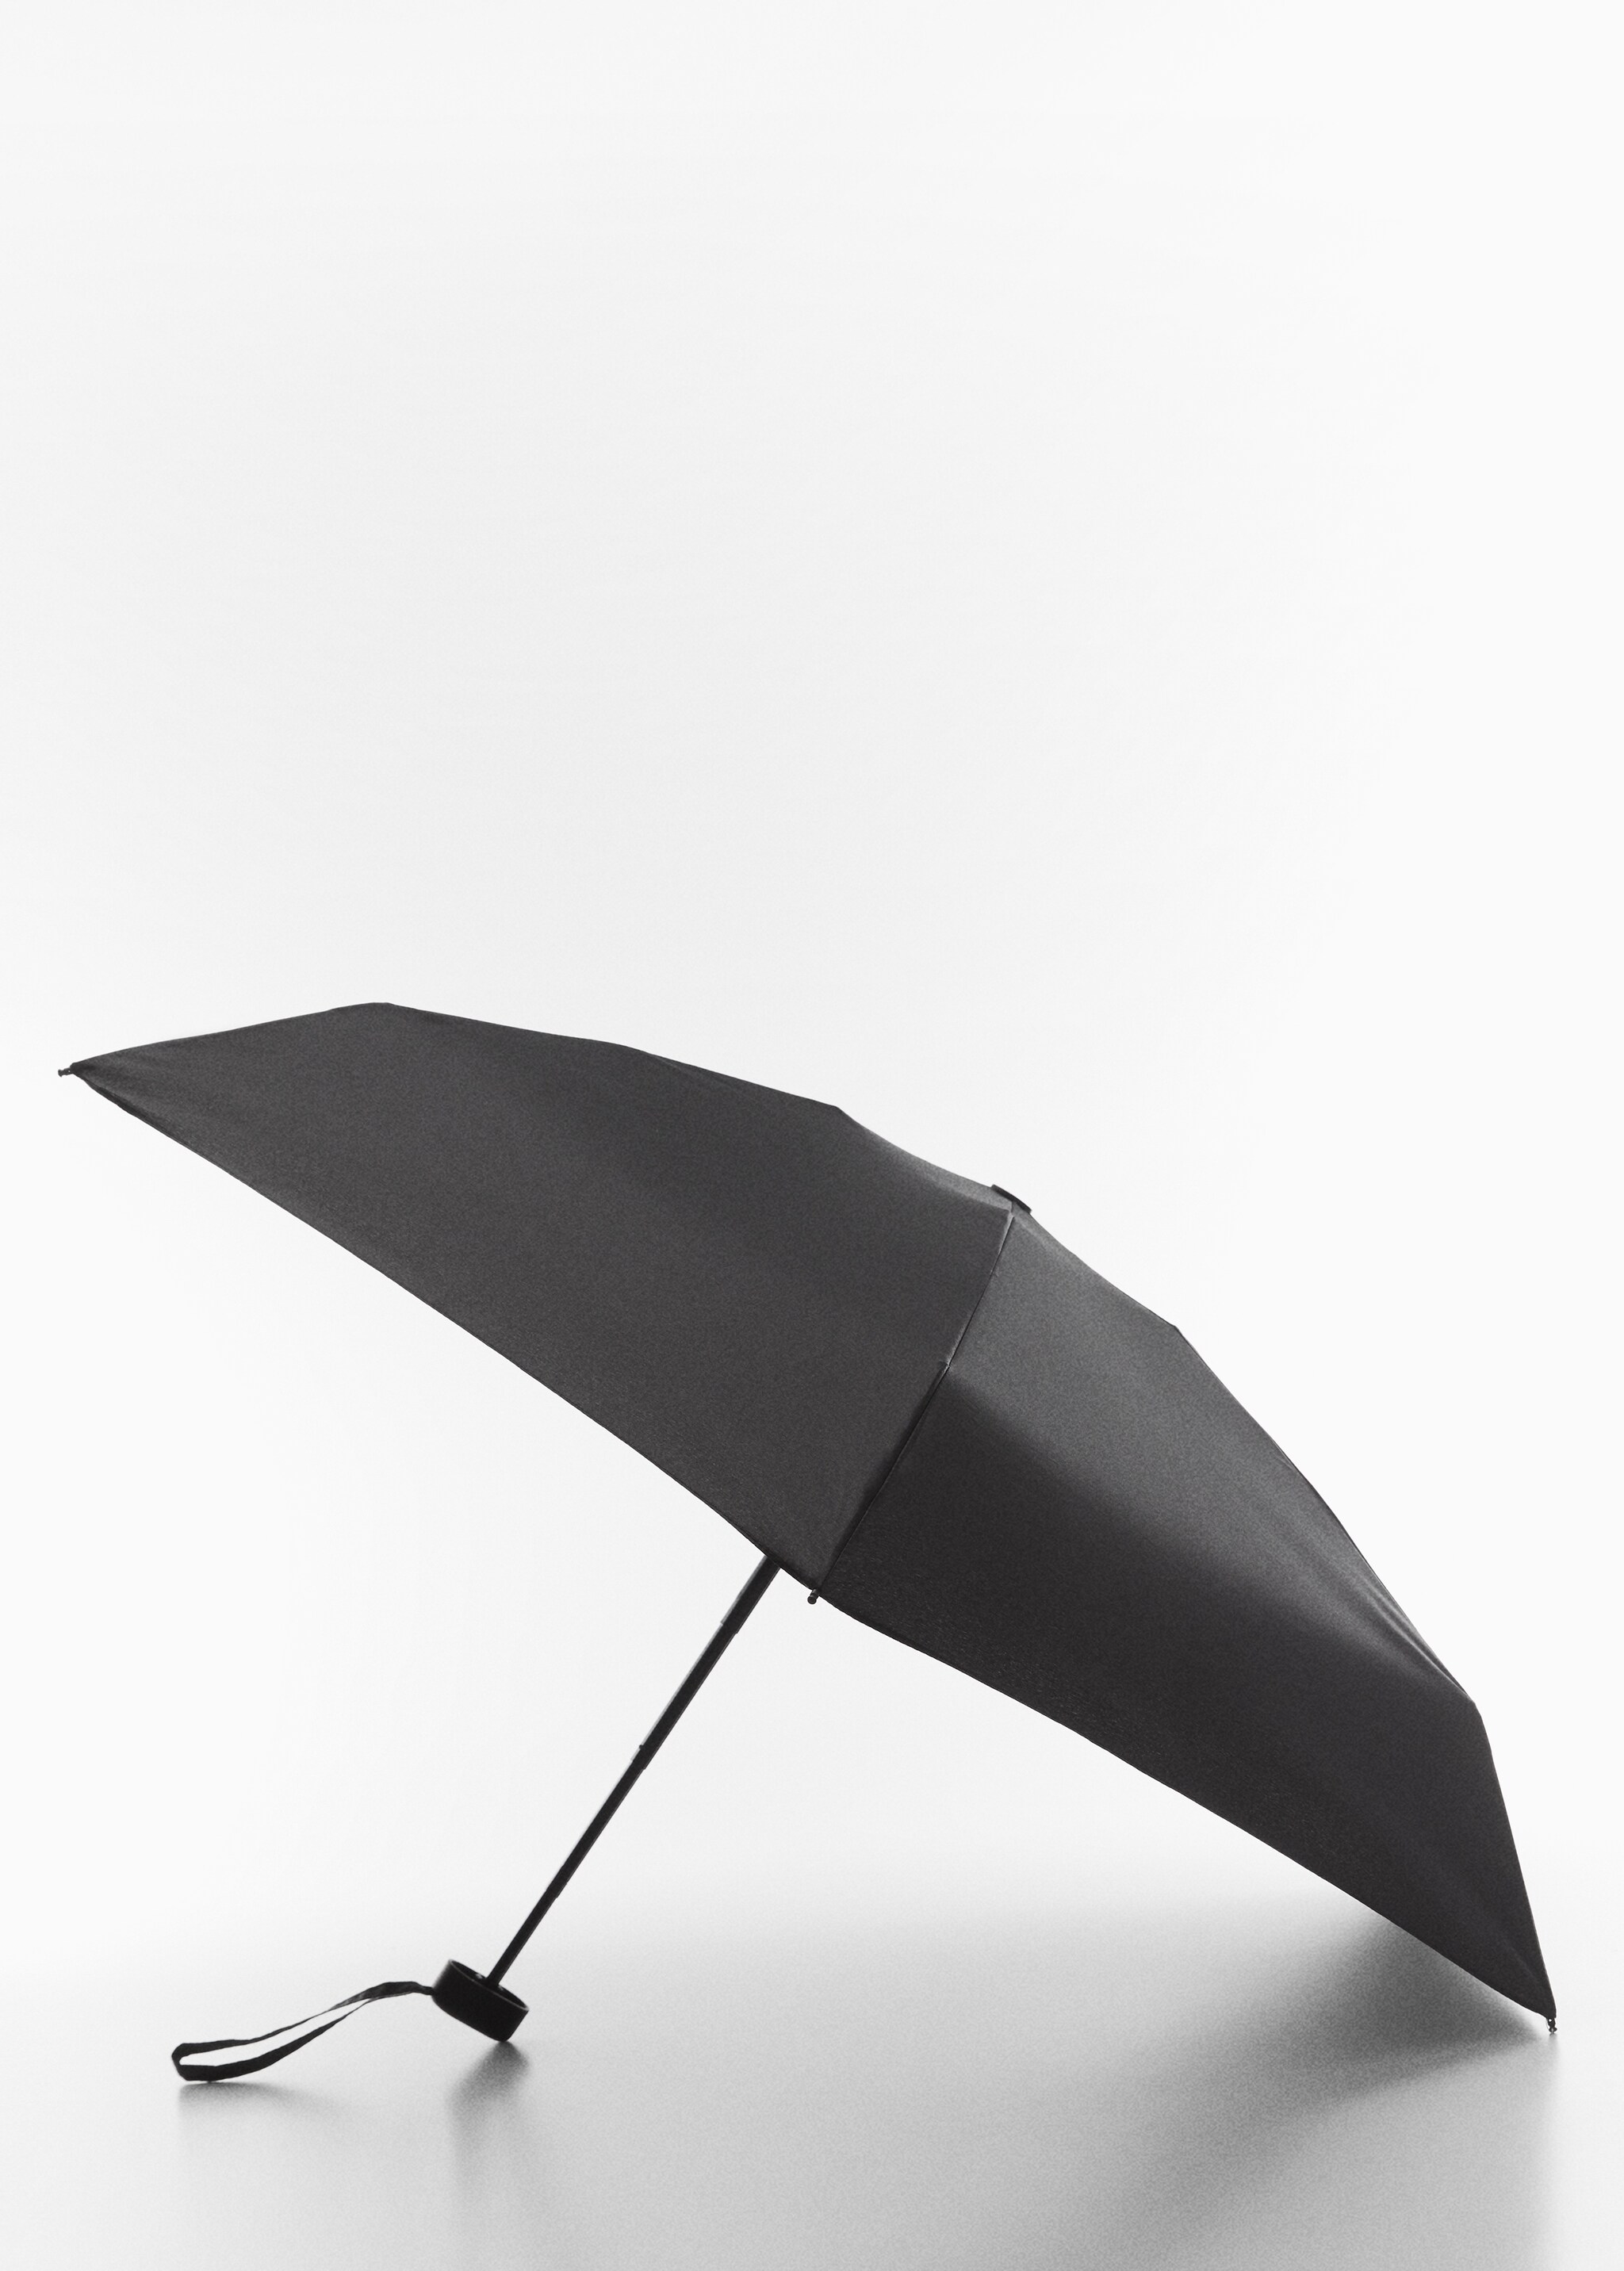 Mini folding umbrella - Medium plane